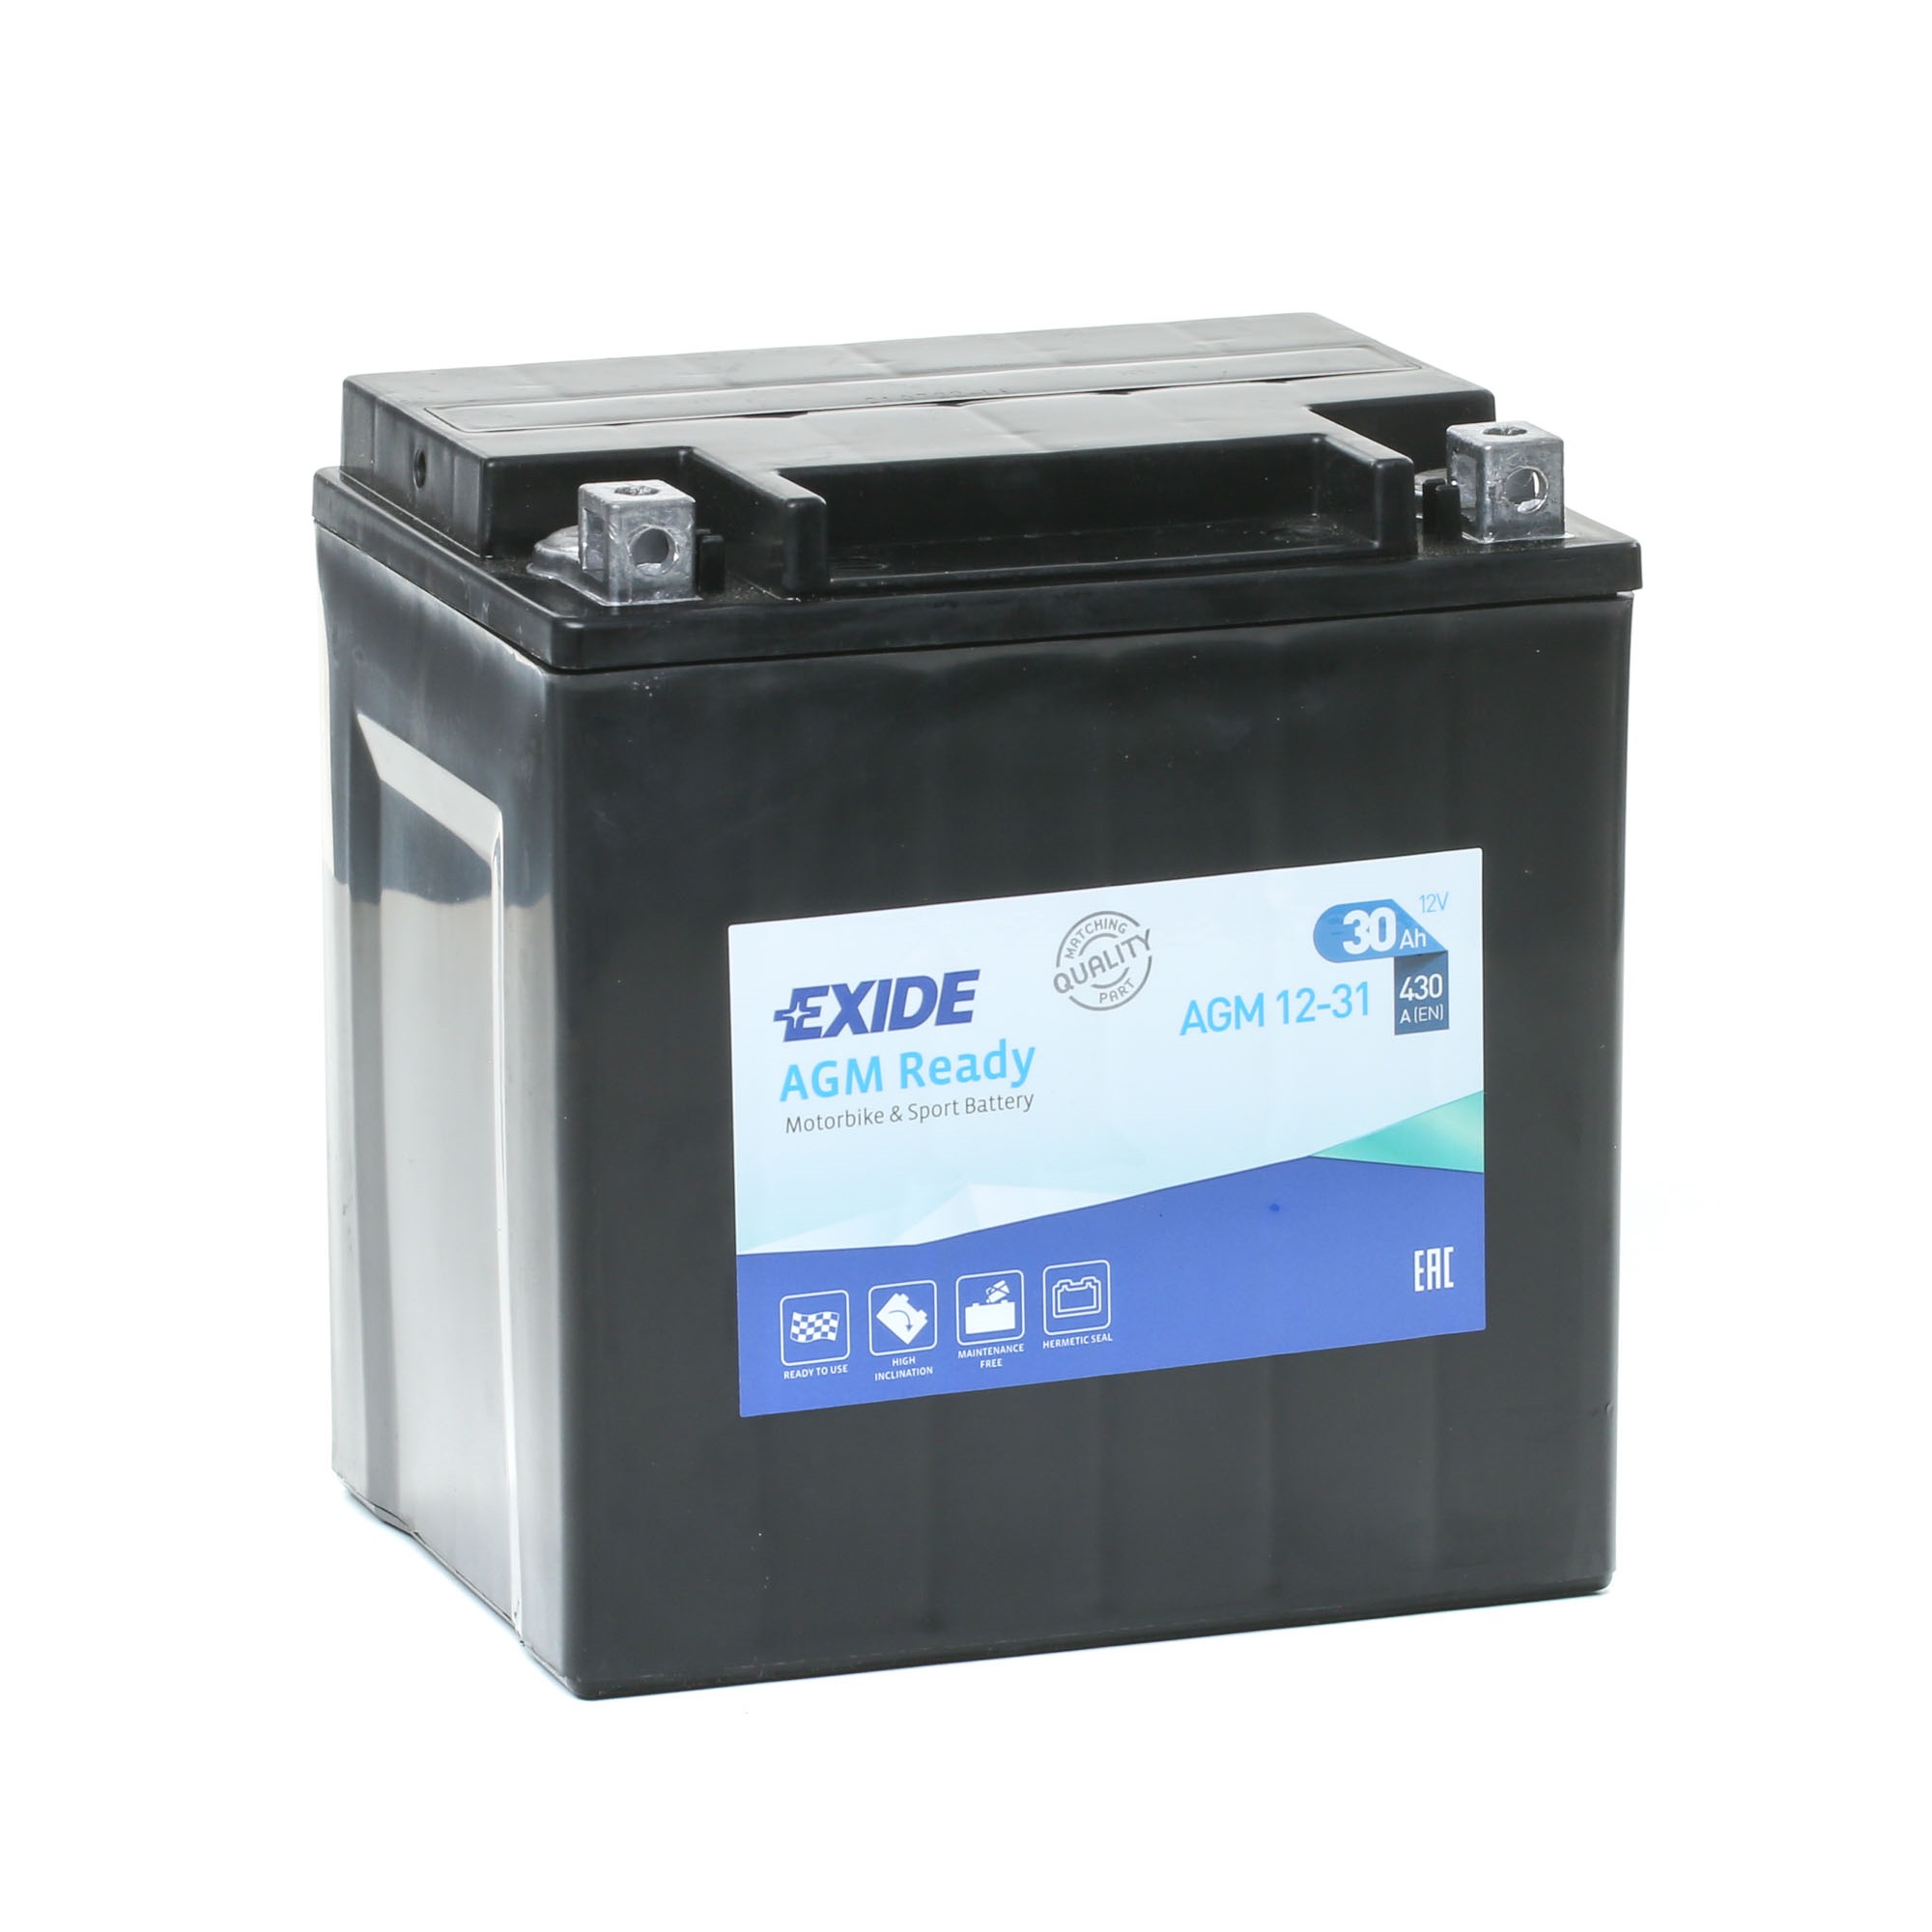 Comprare Batteria avviamento EXIDE AGM12-31 DUCATI Maxi-scooter ricambi online